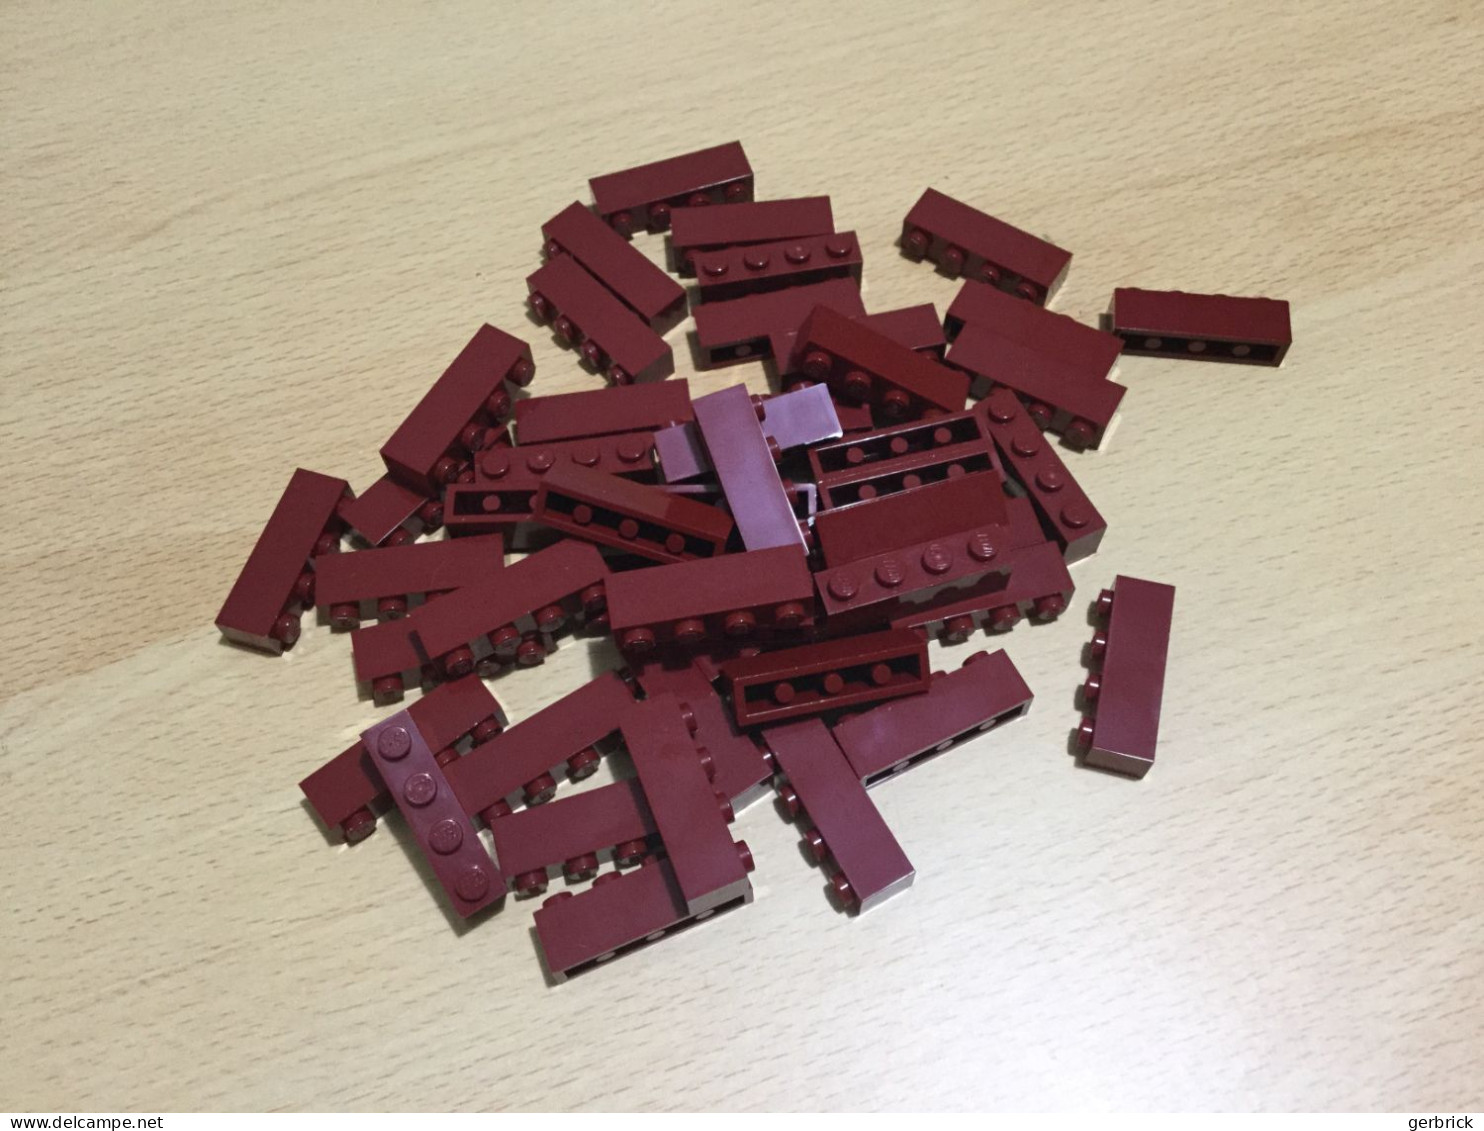 Lego Brick - Lose